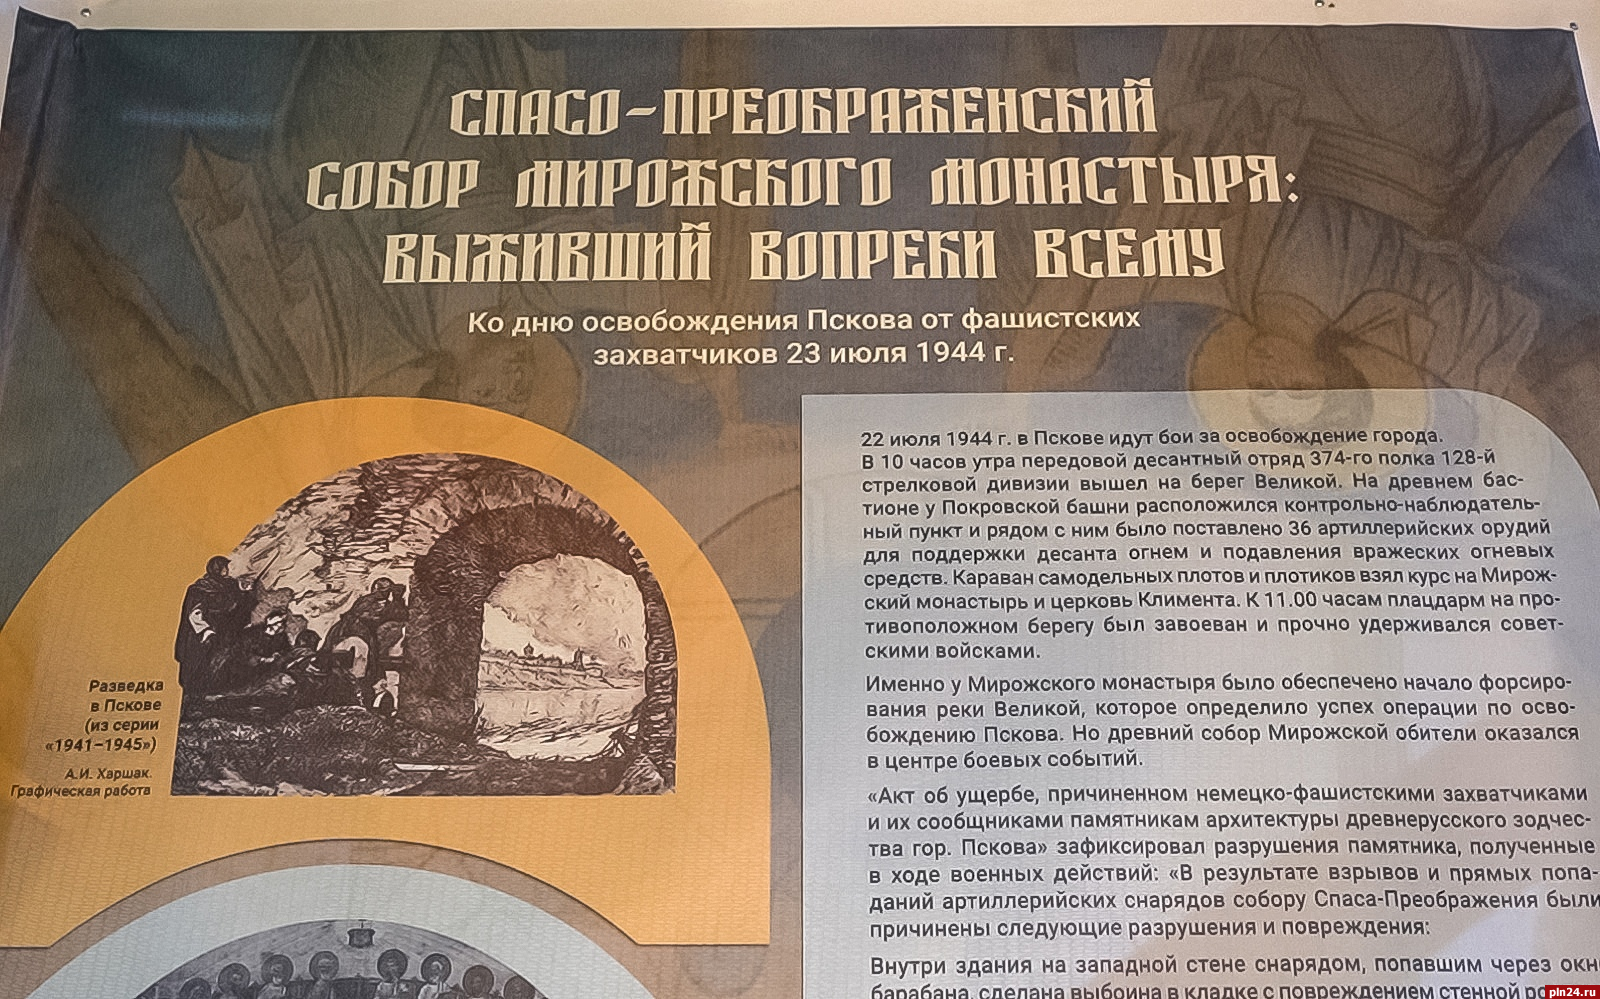 В Спасо-Преображенском соборе поставили баннер с историей угрозы его уничтожения